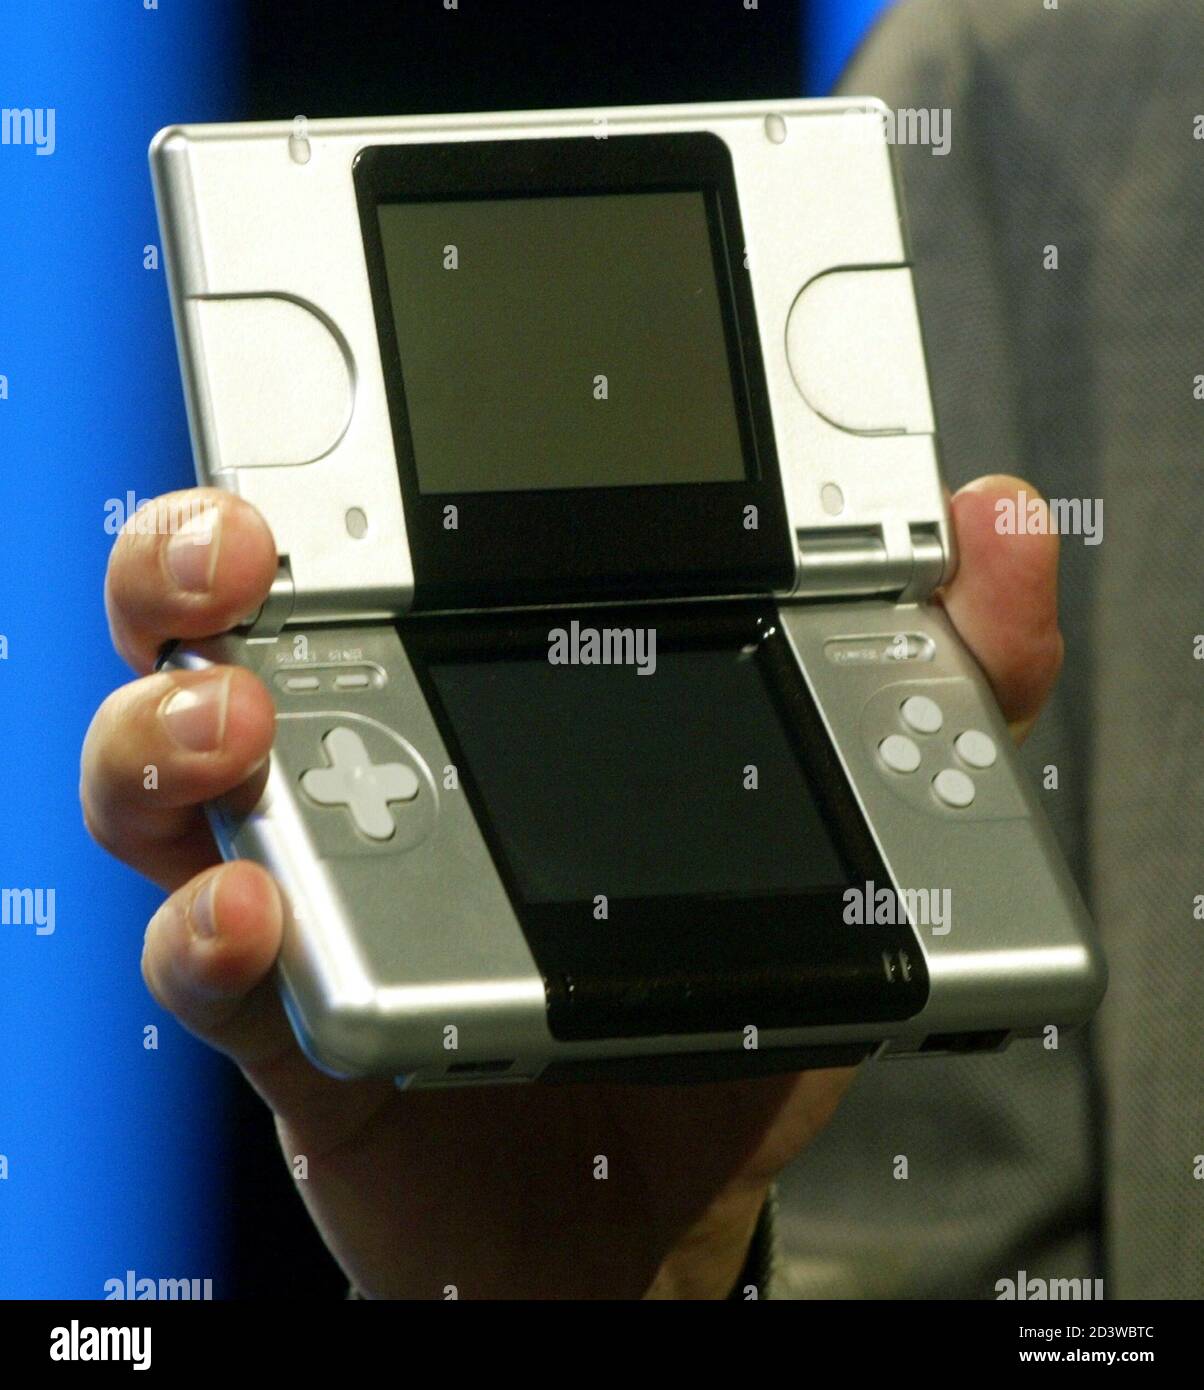 El nuevo Nintendo DS, un dispositivo portátil de pantalla dual para juegos  es mostrado por primera vez por [Reggie Fils-Amime, vicepresidente  ejecutivo de Nintendo of America]t, durante una vista previa de prensa